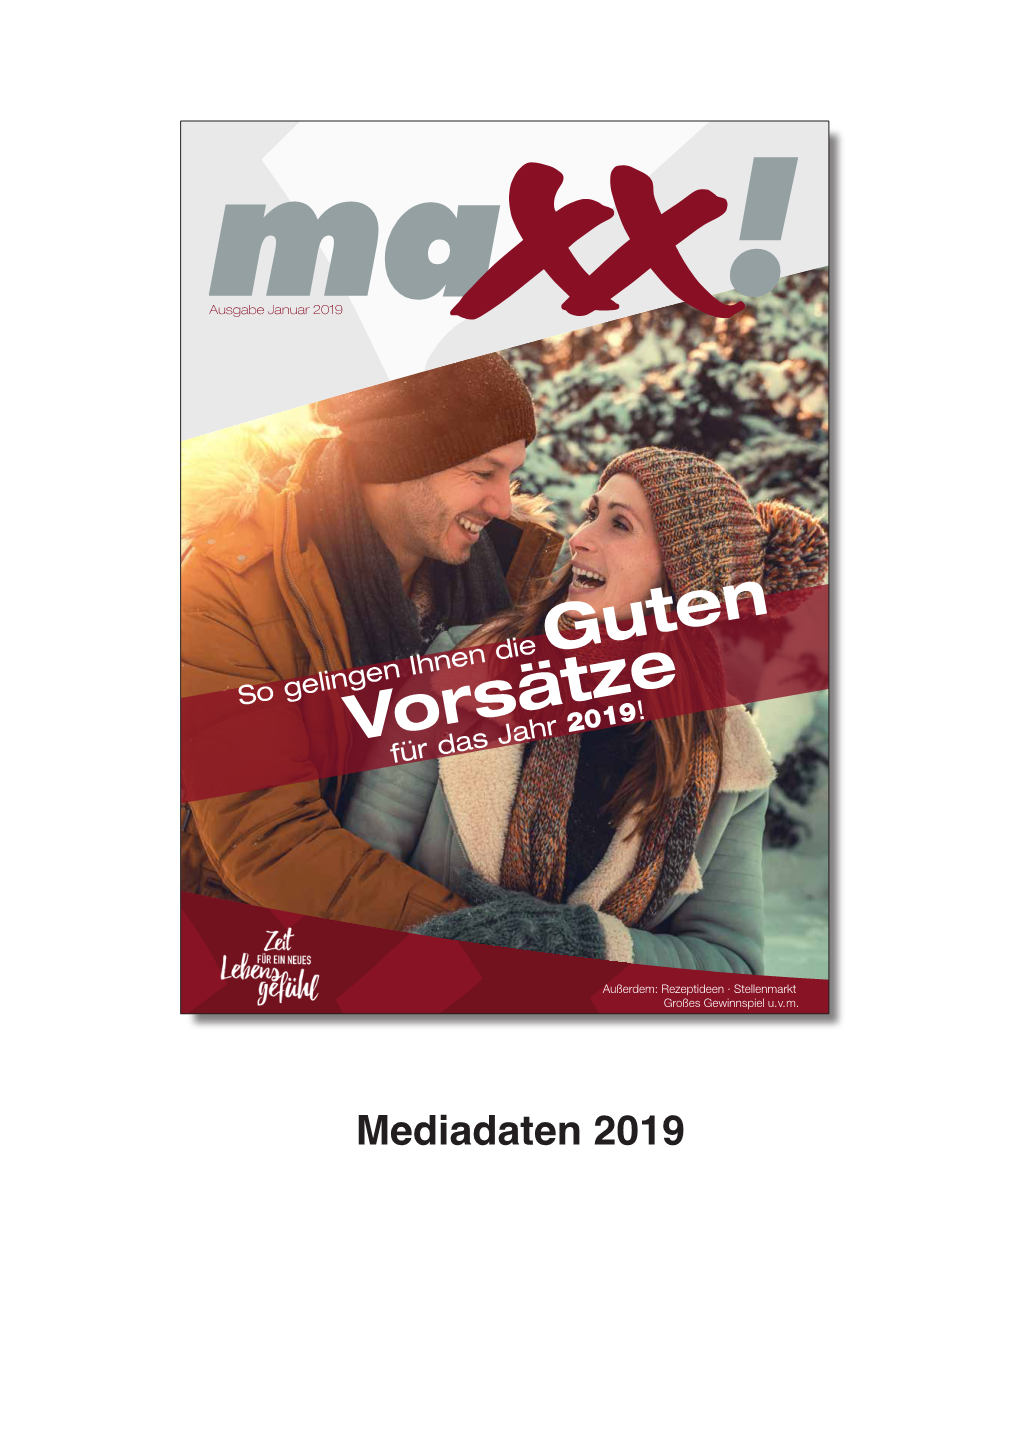 Mediadaten Maxx News 2019.Indd